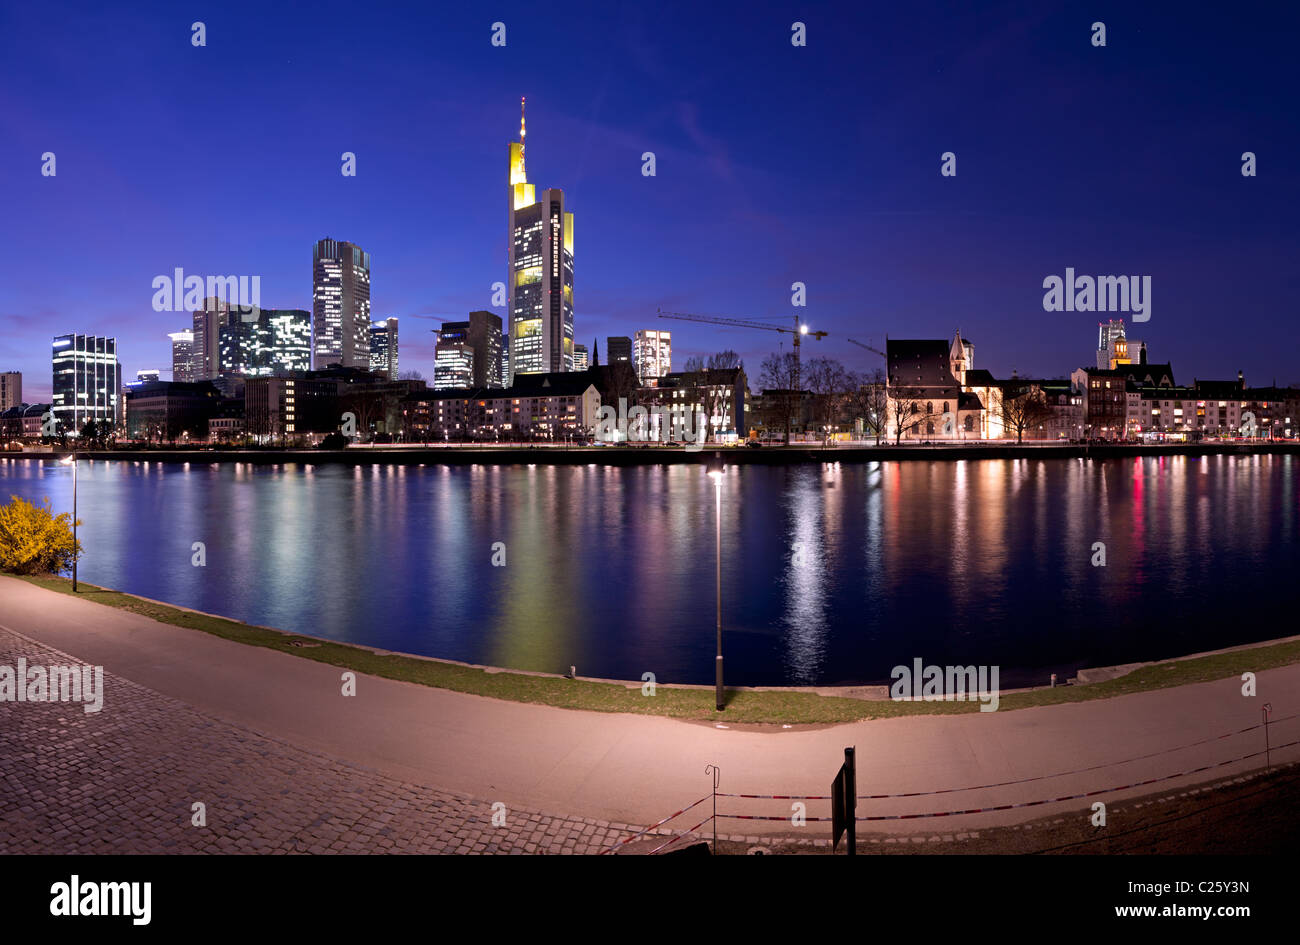 La rivière Main à Francfort, Allemagne, avec l'horizon de la ville au crépuscule. Banque D'Images